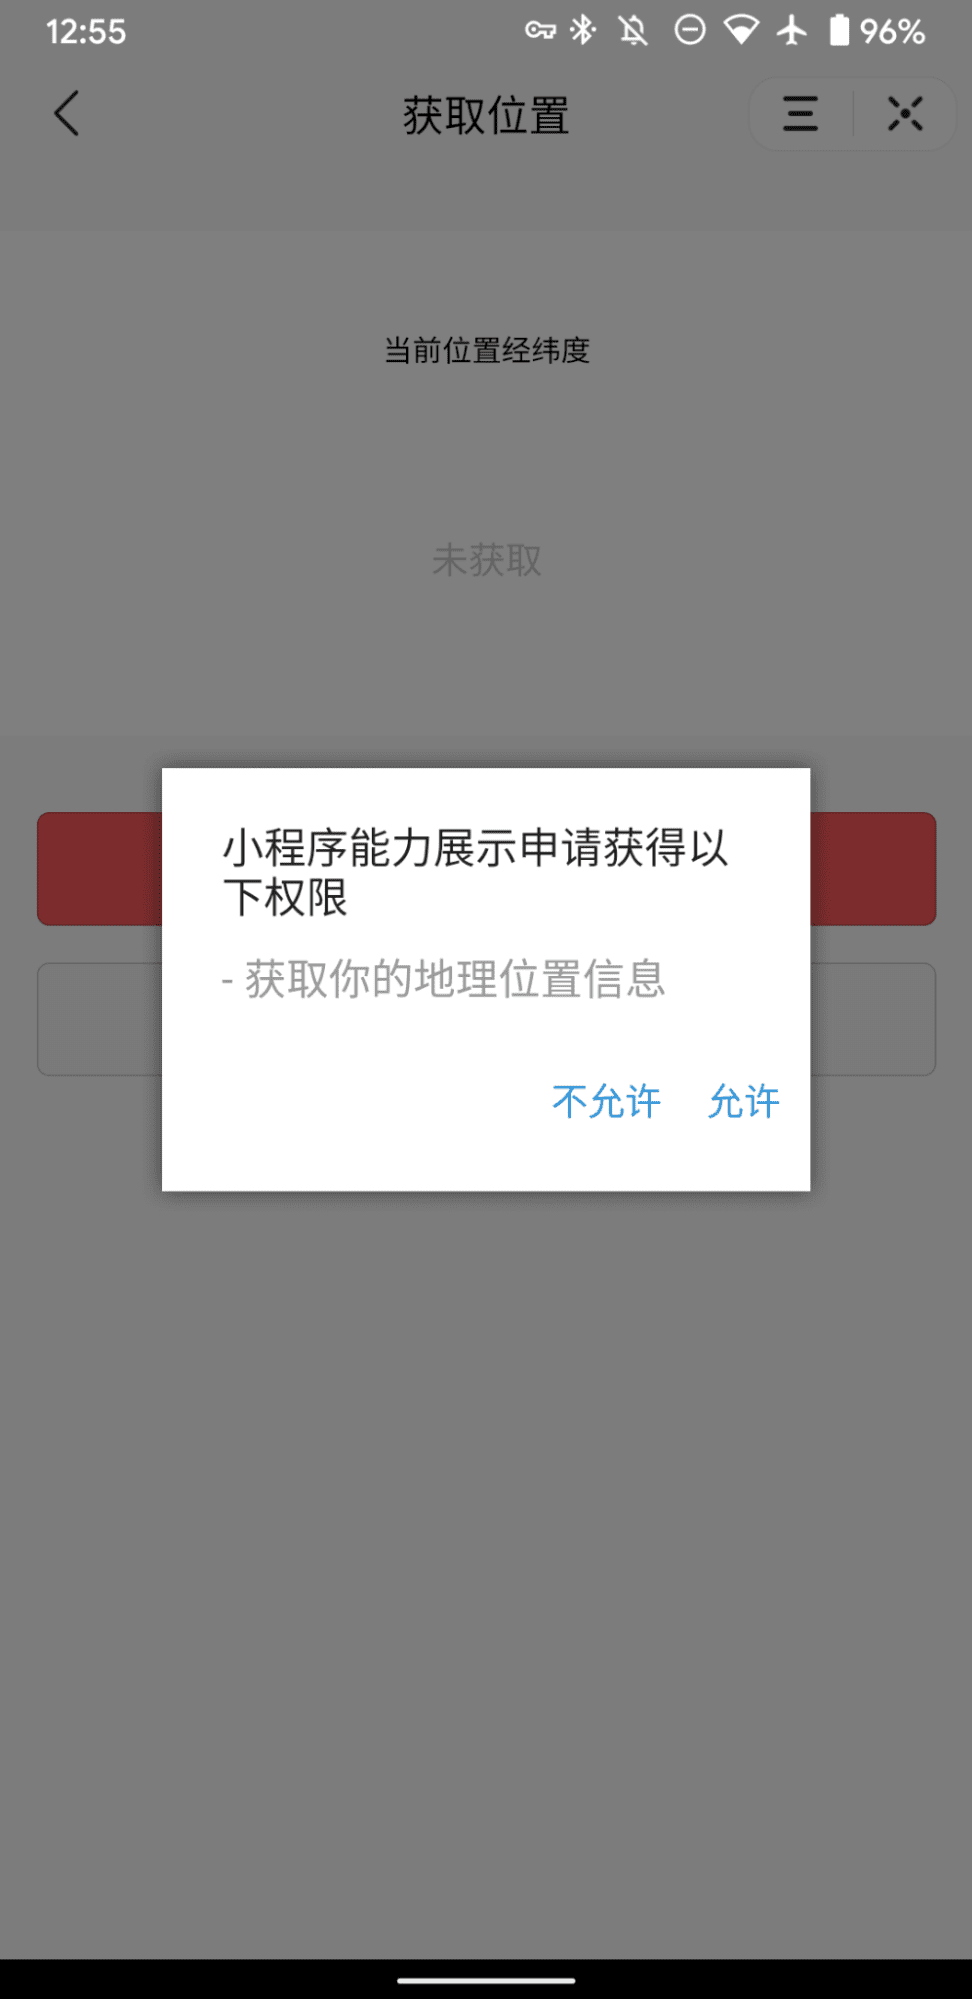 &#39;허용되지 않음&#39;과 &#39;허용됨&#39;의 두 가지 옵션이 있는 위치정보 프롬프트를 보여주는 Douyin 데모 미니 앱